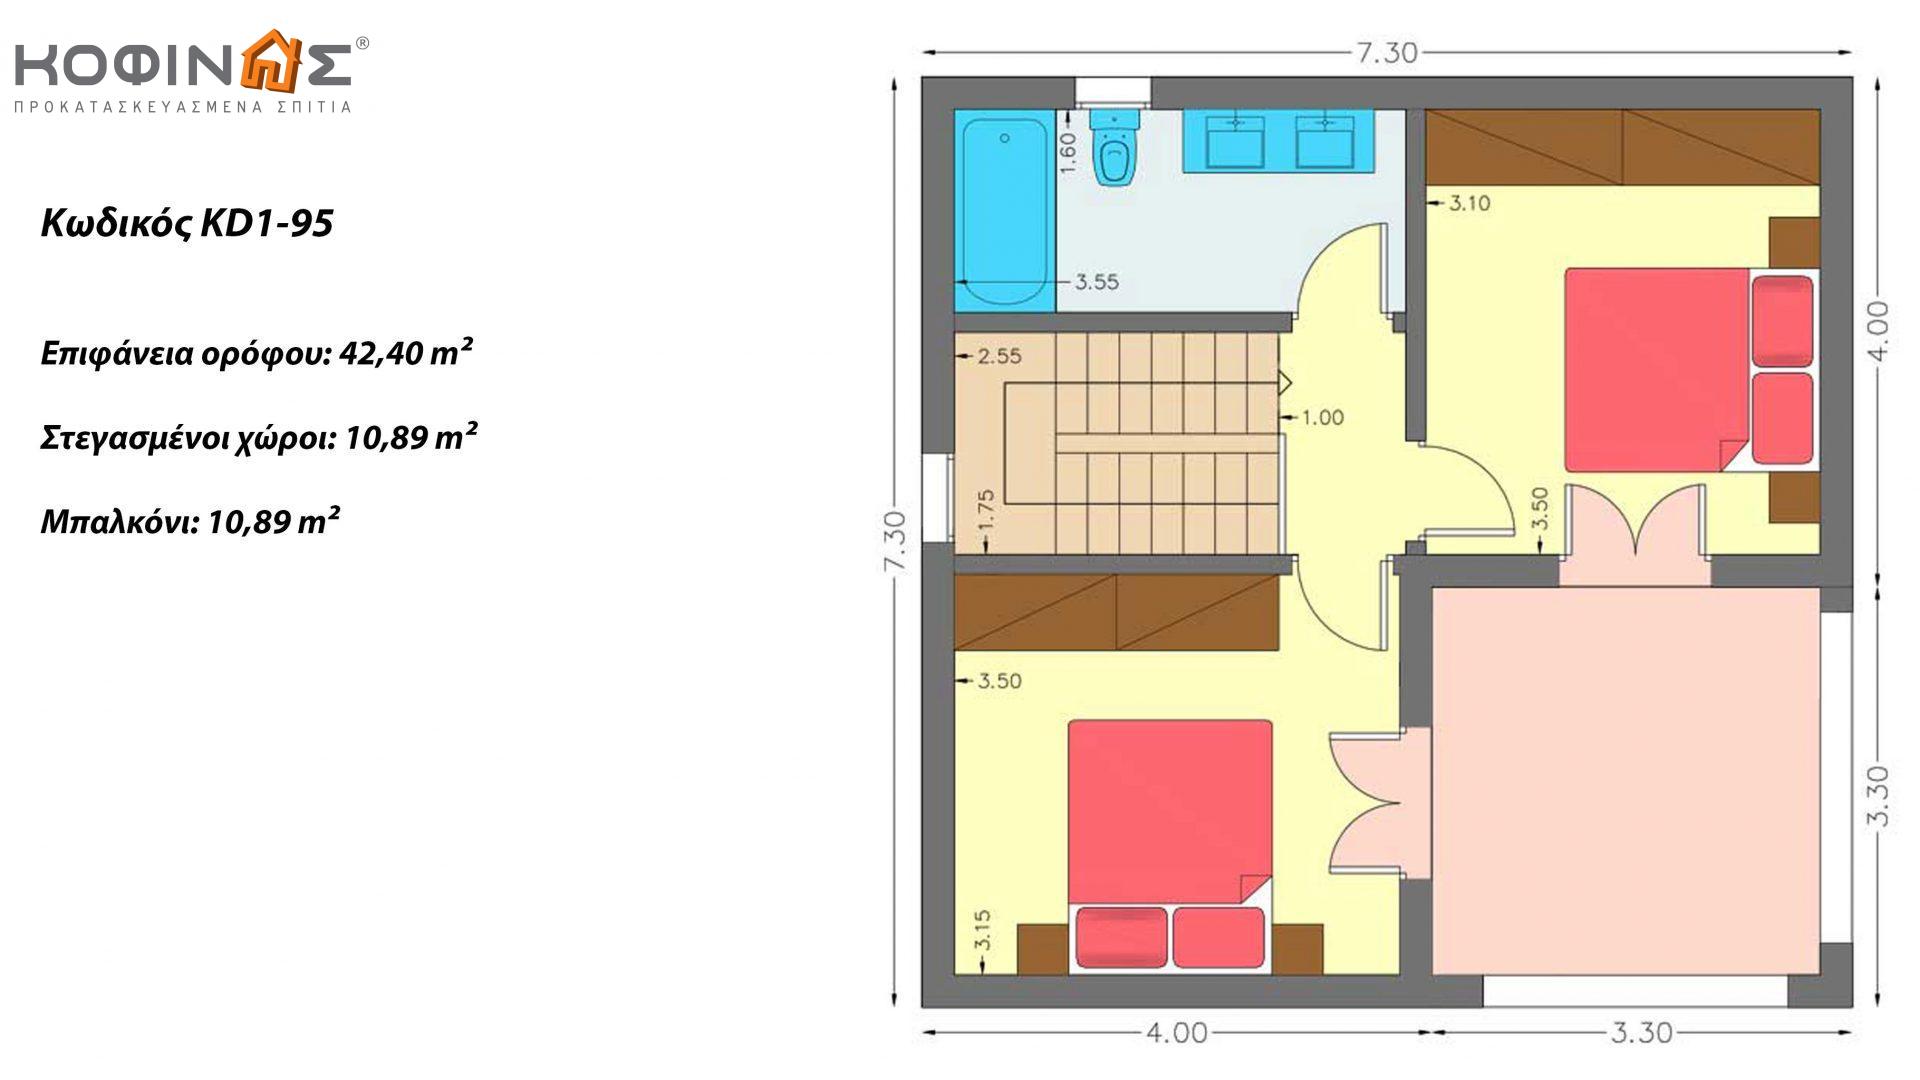 Διώροφη Κατοικία KD1-95, συνολικής επιφάνειας 95,70 τ.μ., συνολική επιφάνεια στεγασμένων χώρων 19,23 τ.μ., μπαλκόνια 10,89 τ.μ.